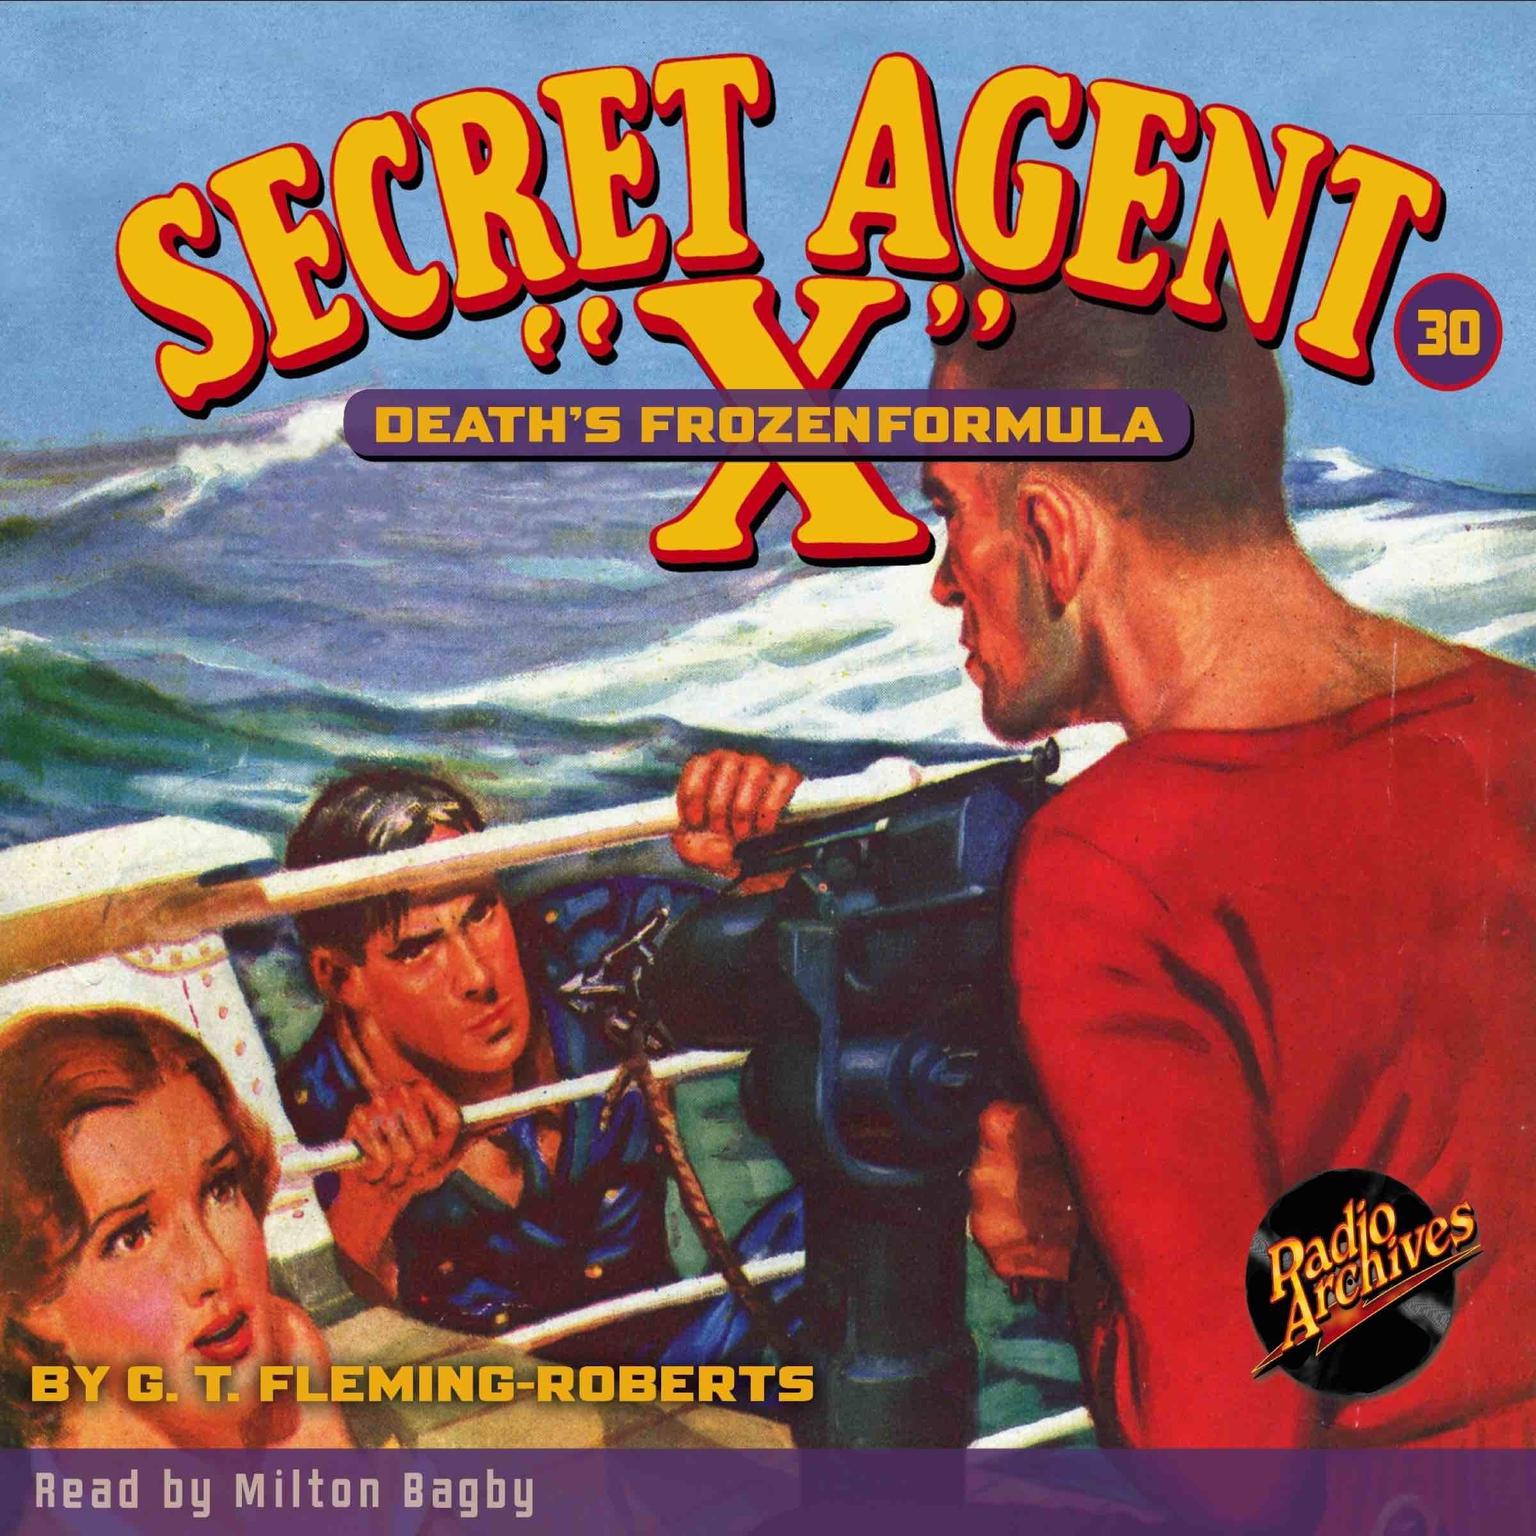 Secret Agent X: Death’s Frozen Formula Audiobook, by G. T. Fleming-Roberts